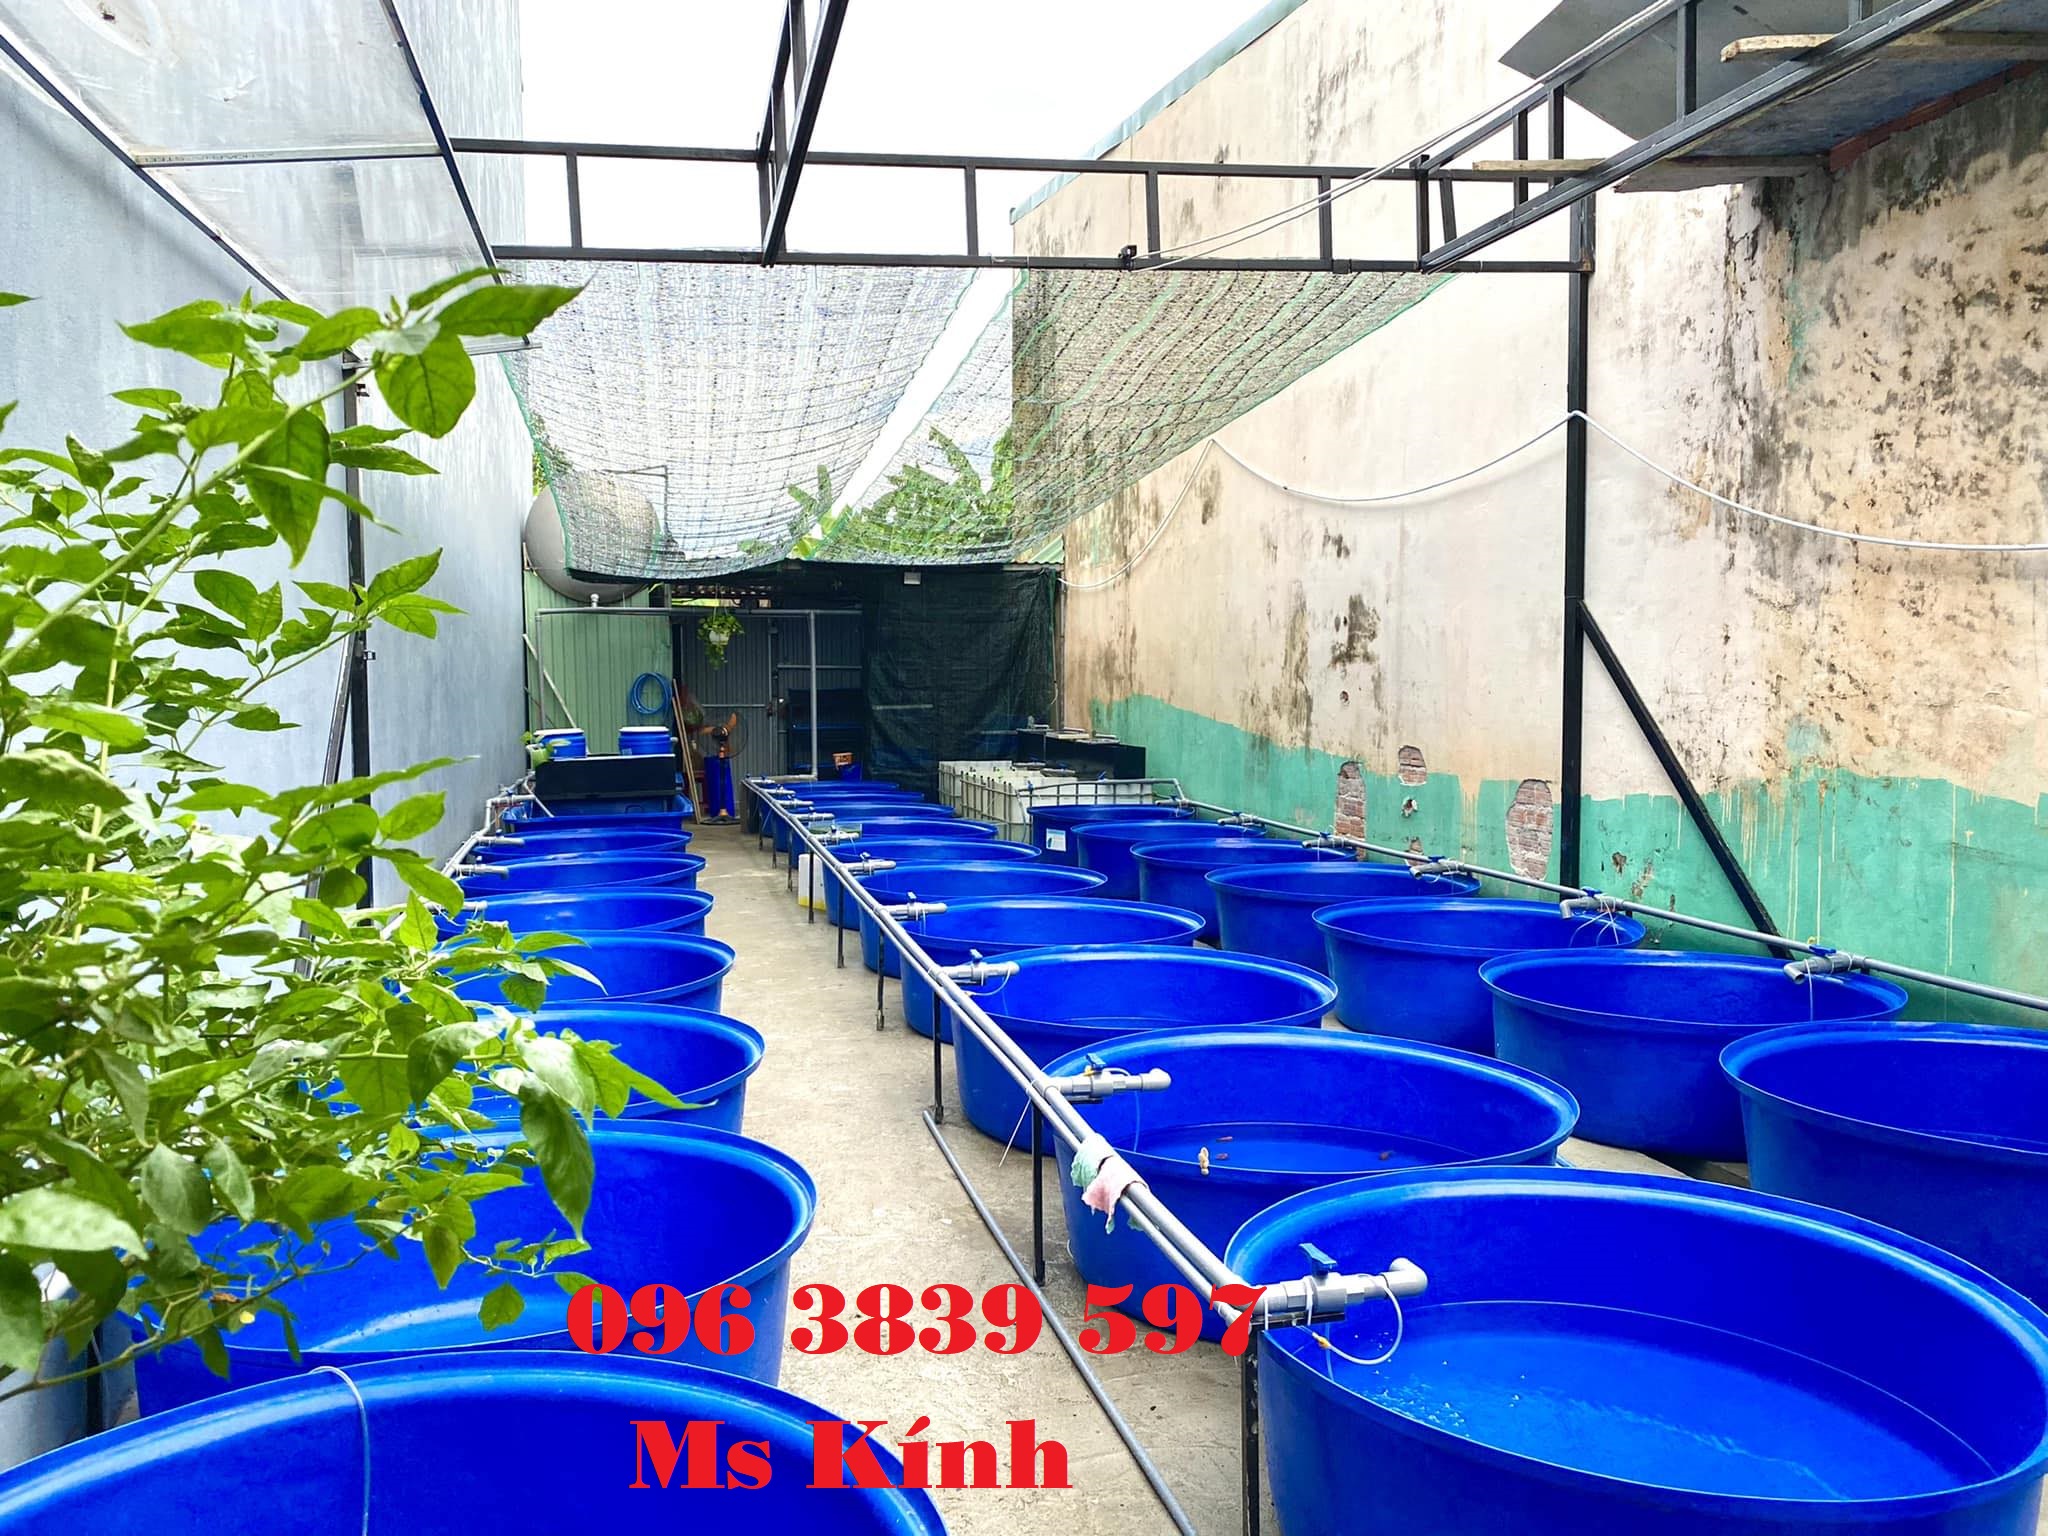 Cung cấp thùng nhựa tròn nuôi cá, trồng cây - 0963839597 Ms Kính